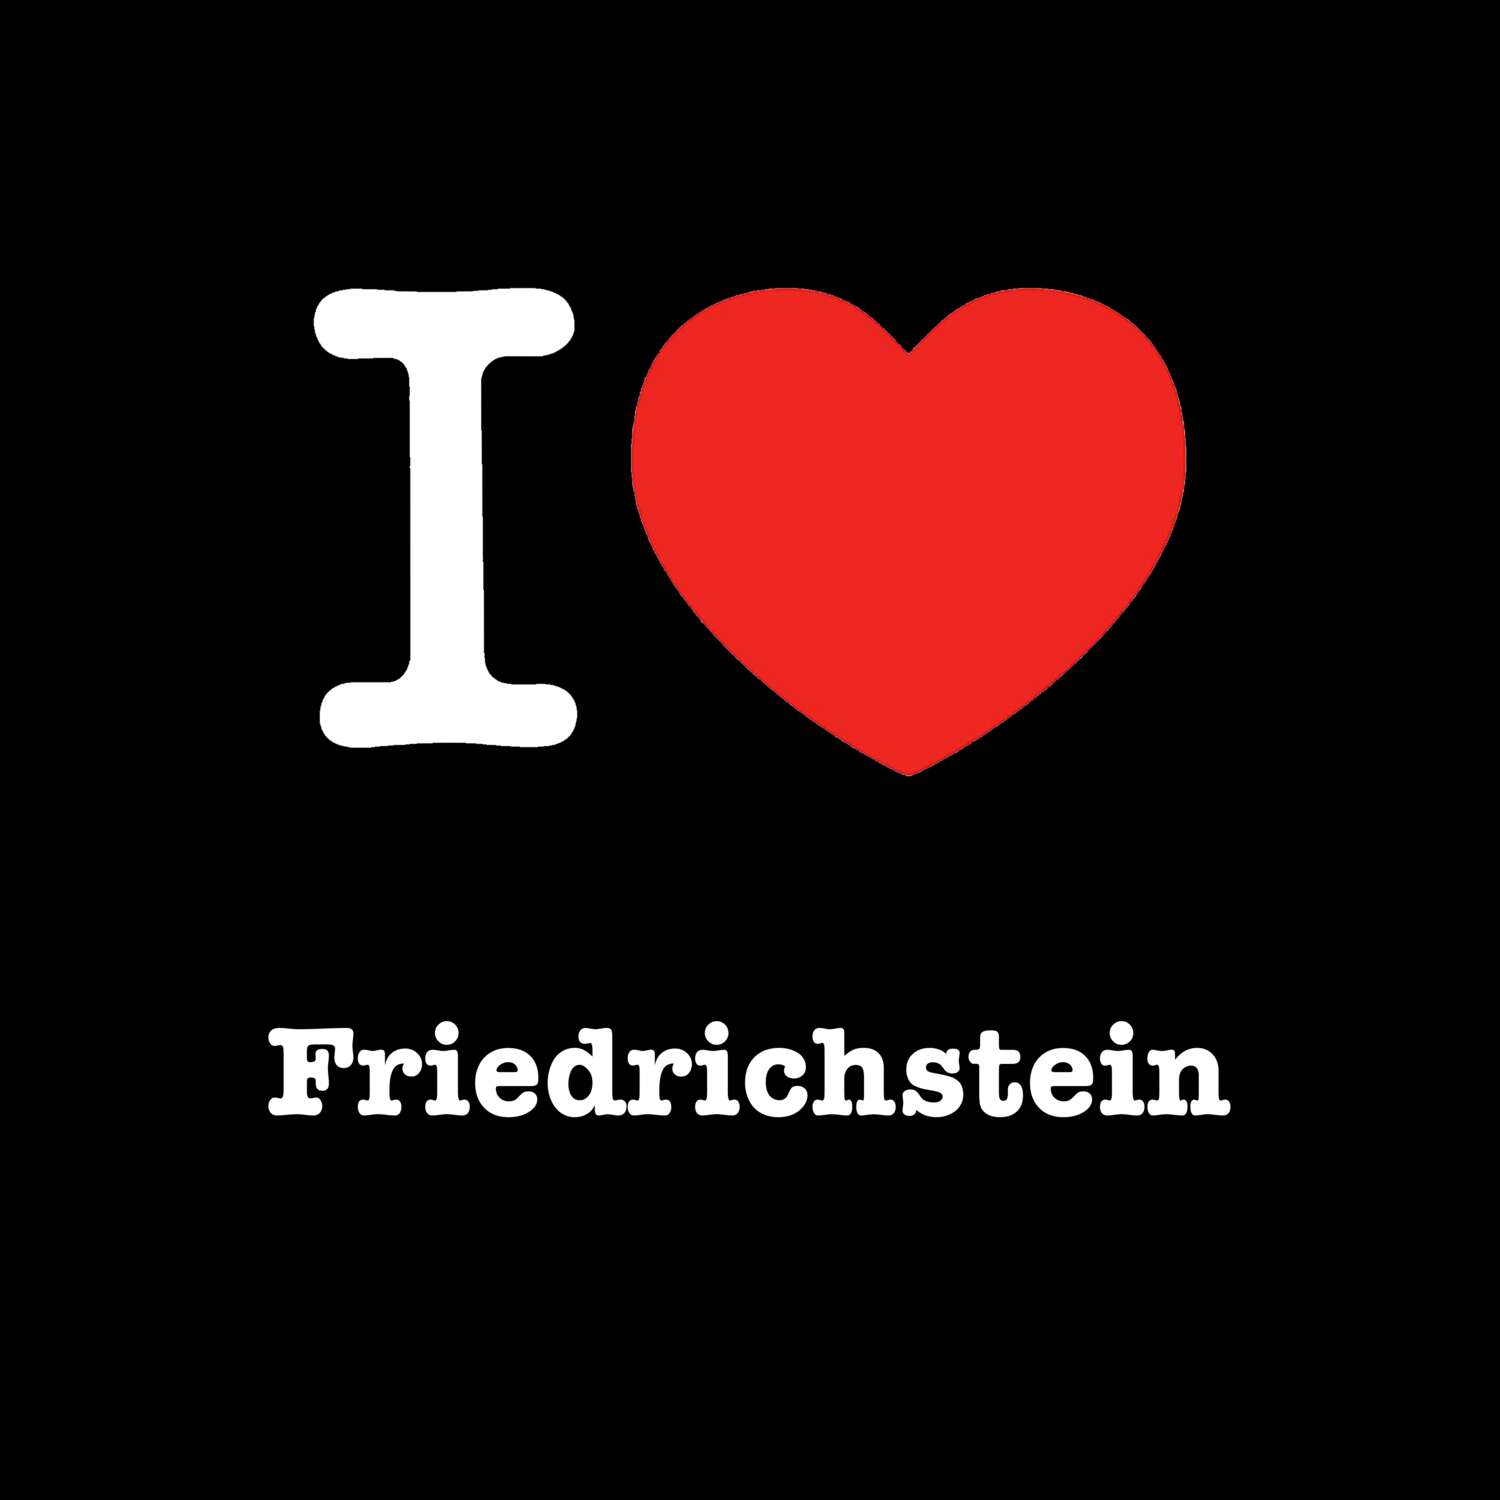 Friedrichstein T-Shirt »I love«